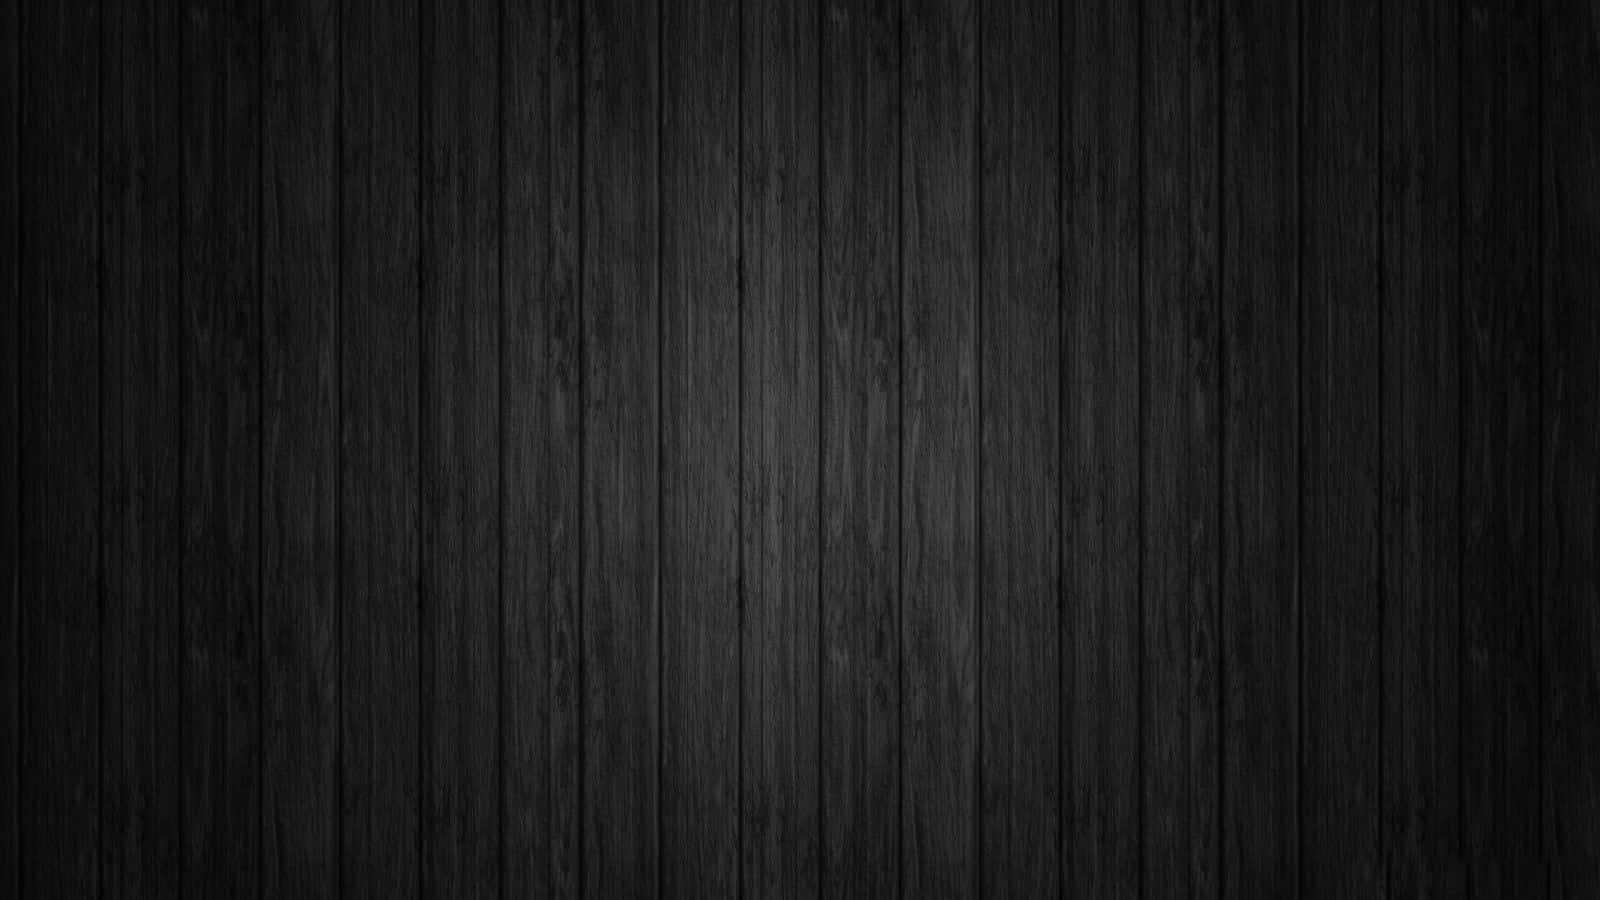 Stunning Black Wooden Background Design